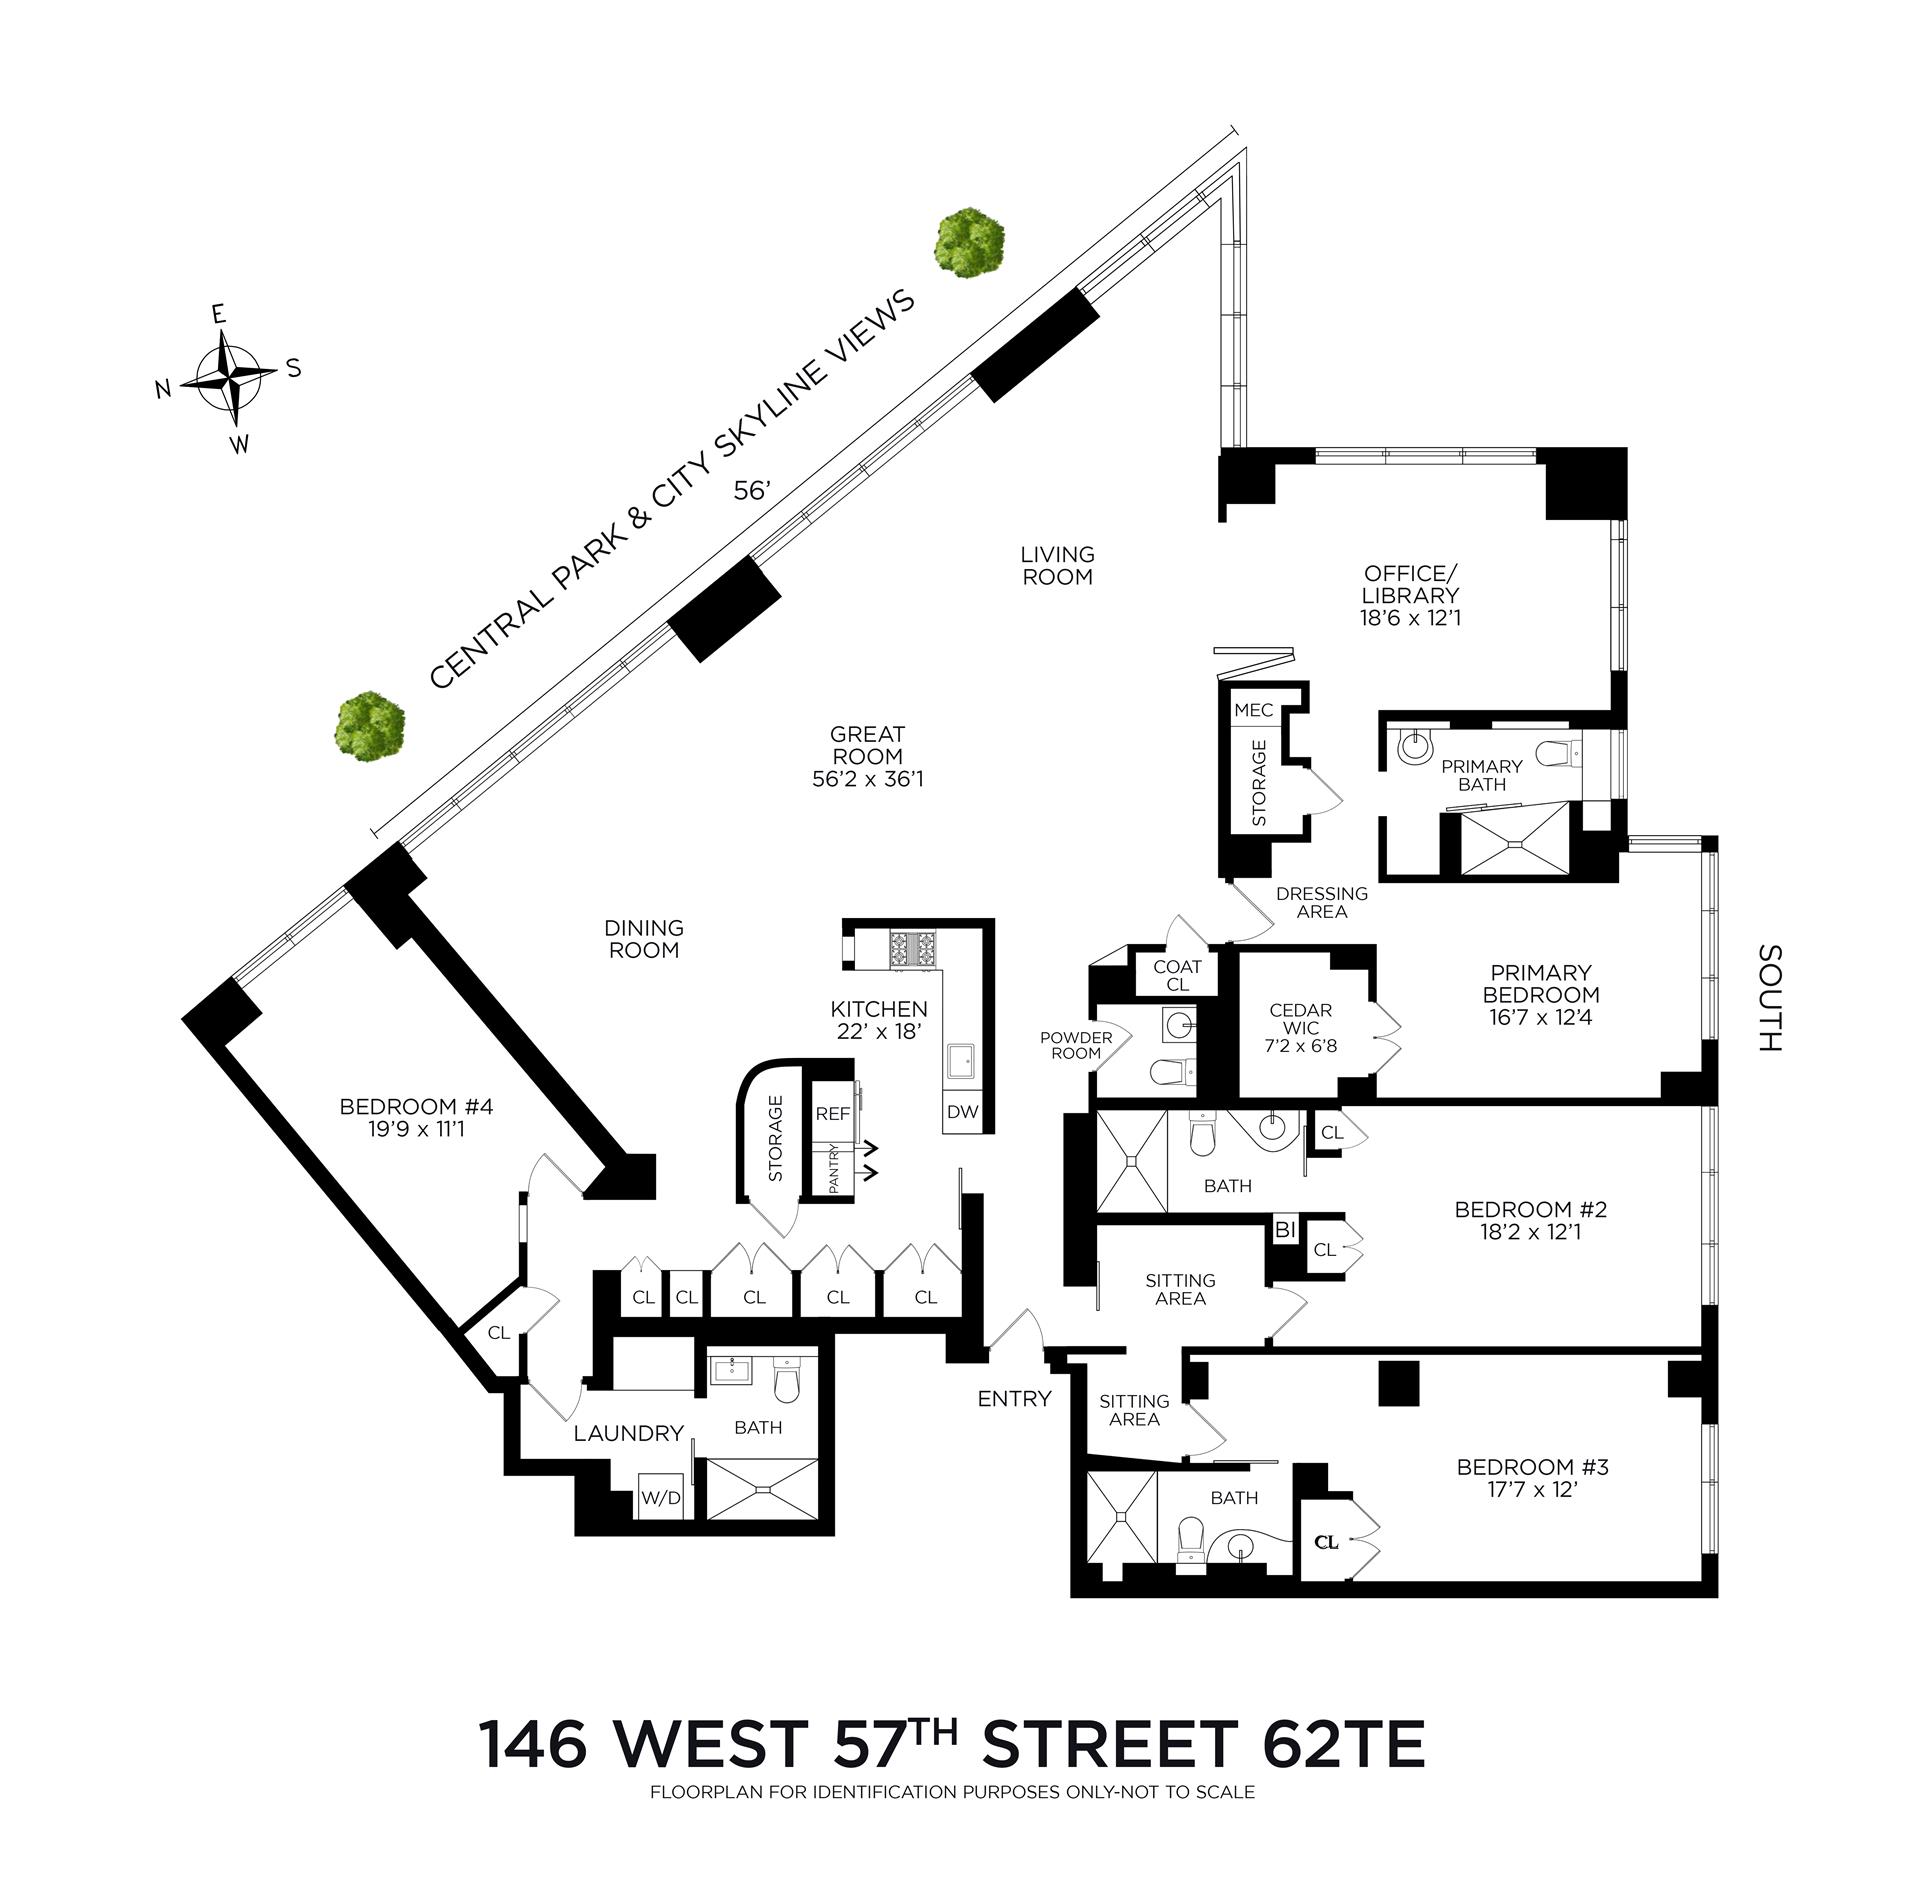 Floorplan for 146 West 57th Street, 62TE